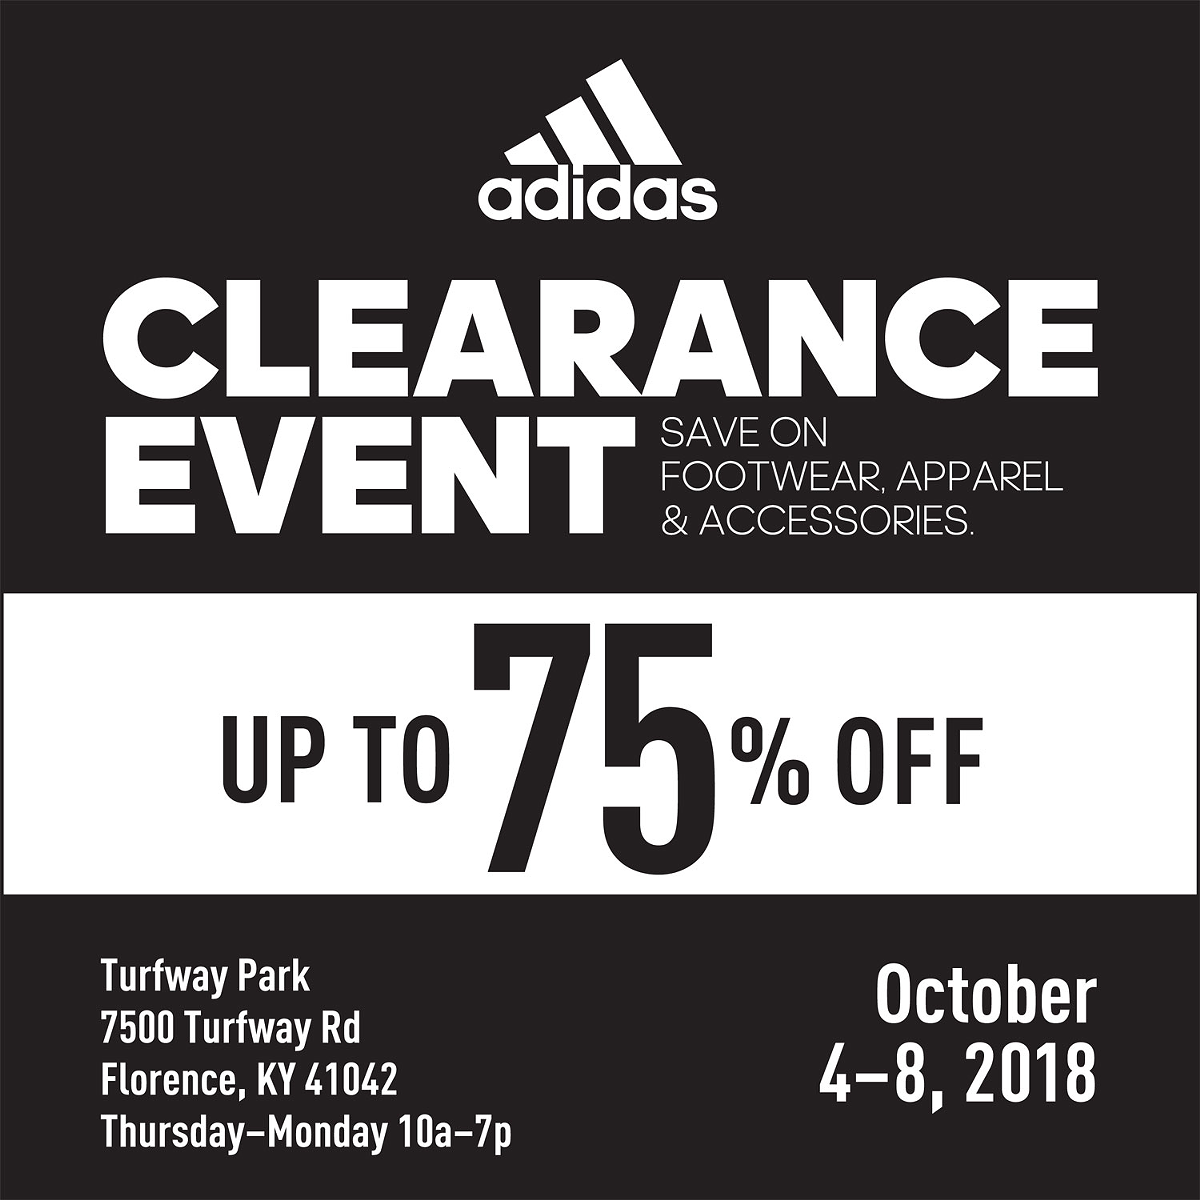 Adidas Tent Sale | Cincinnati CityBeat